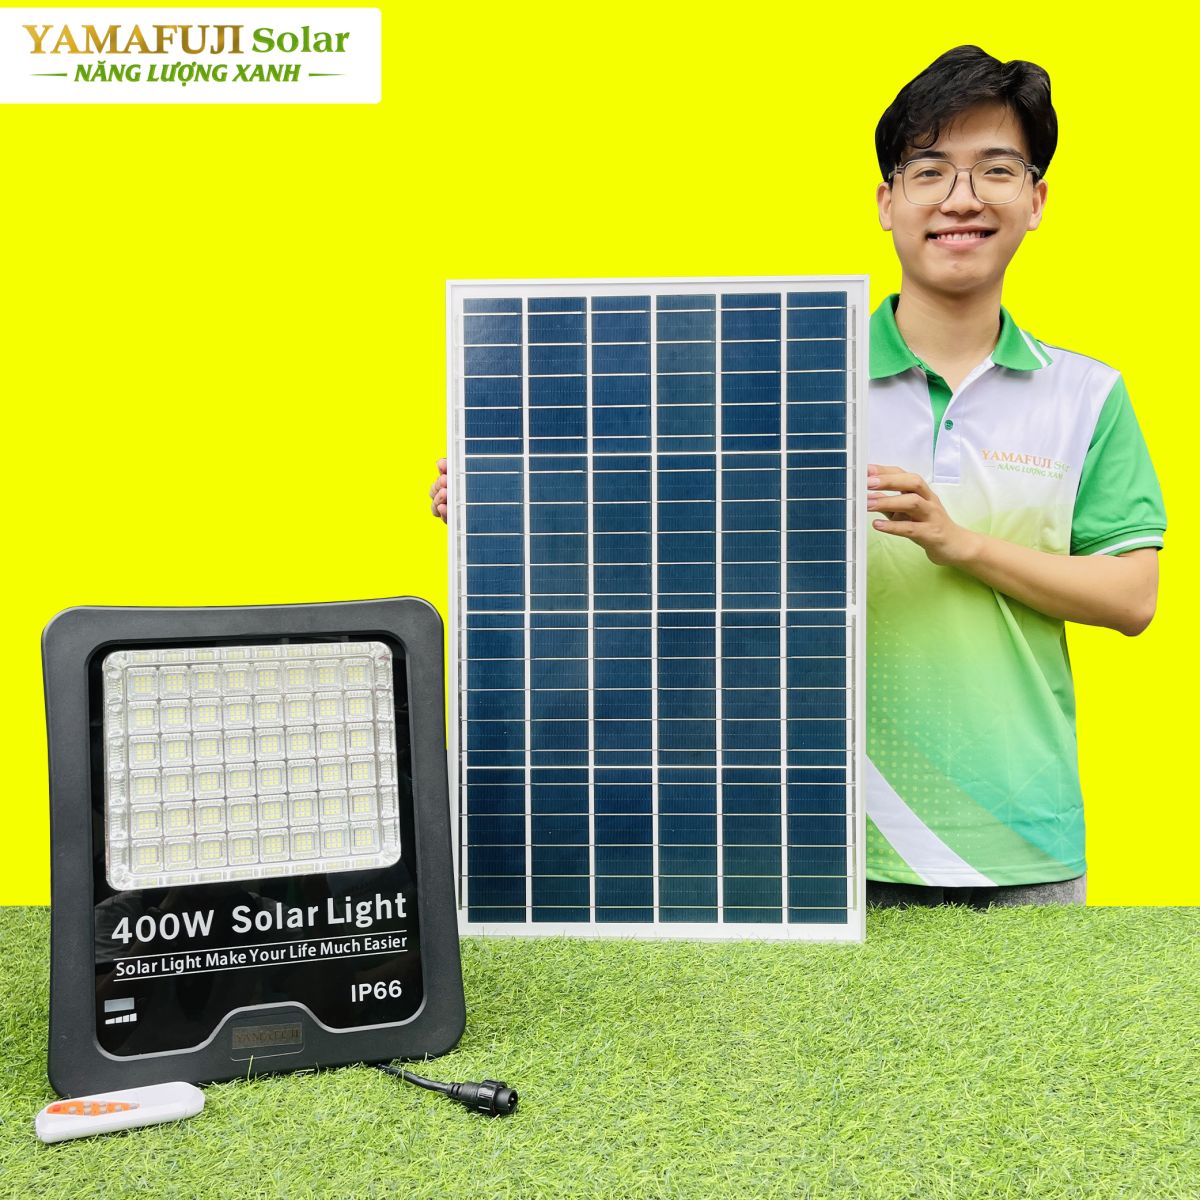 Đèn năng lượng mặt trời Yamafuji Solar SFL02-400W tốt